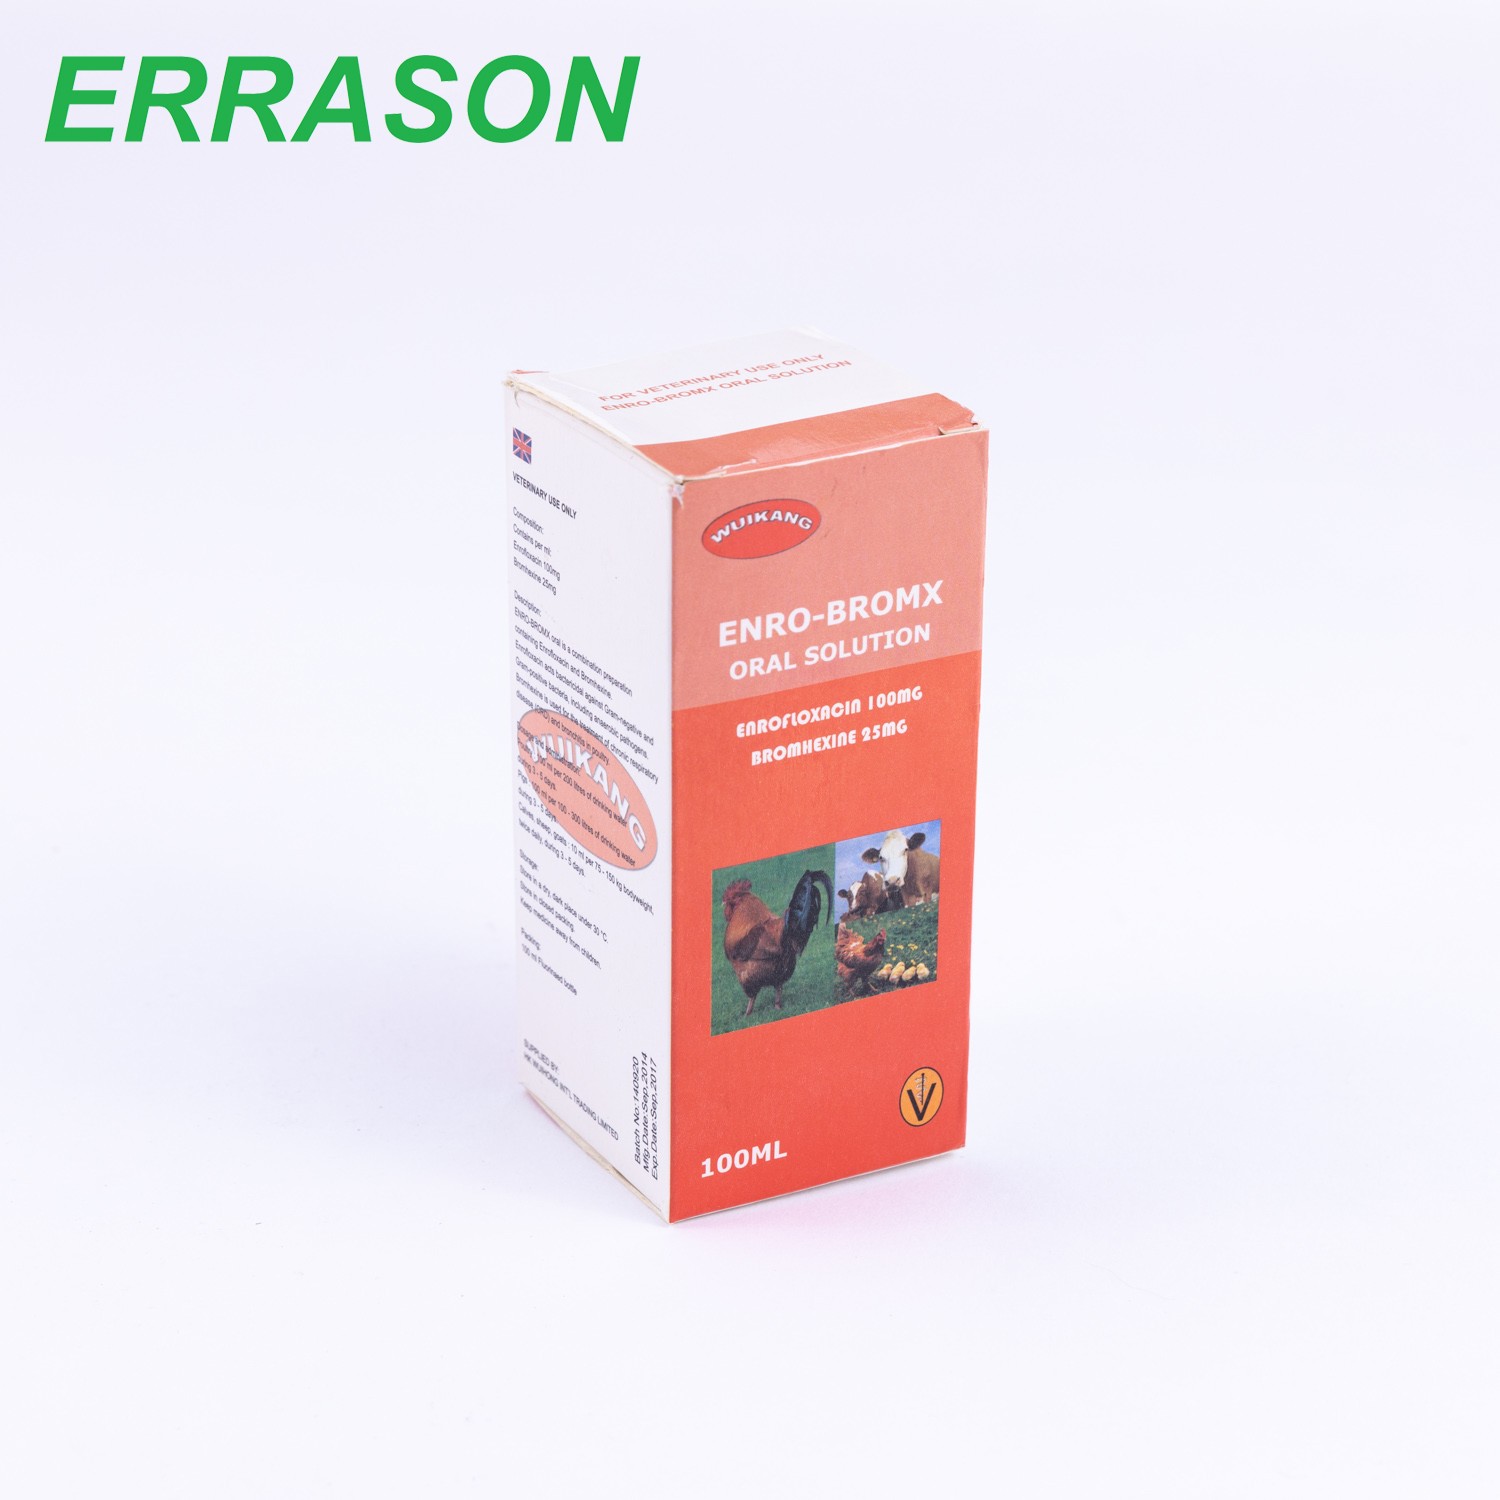 20% Enrofloxacin oral solution